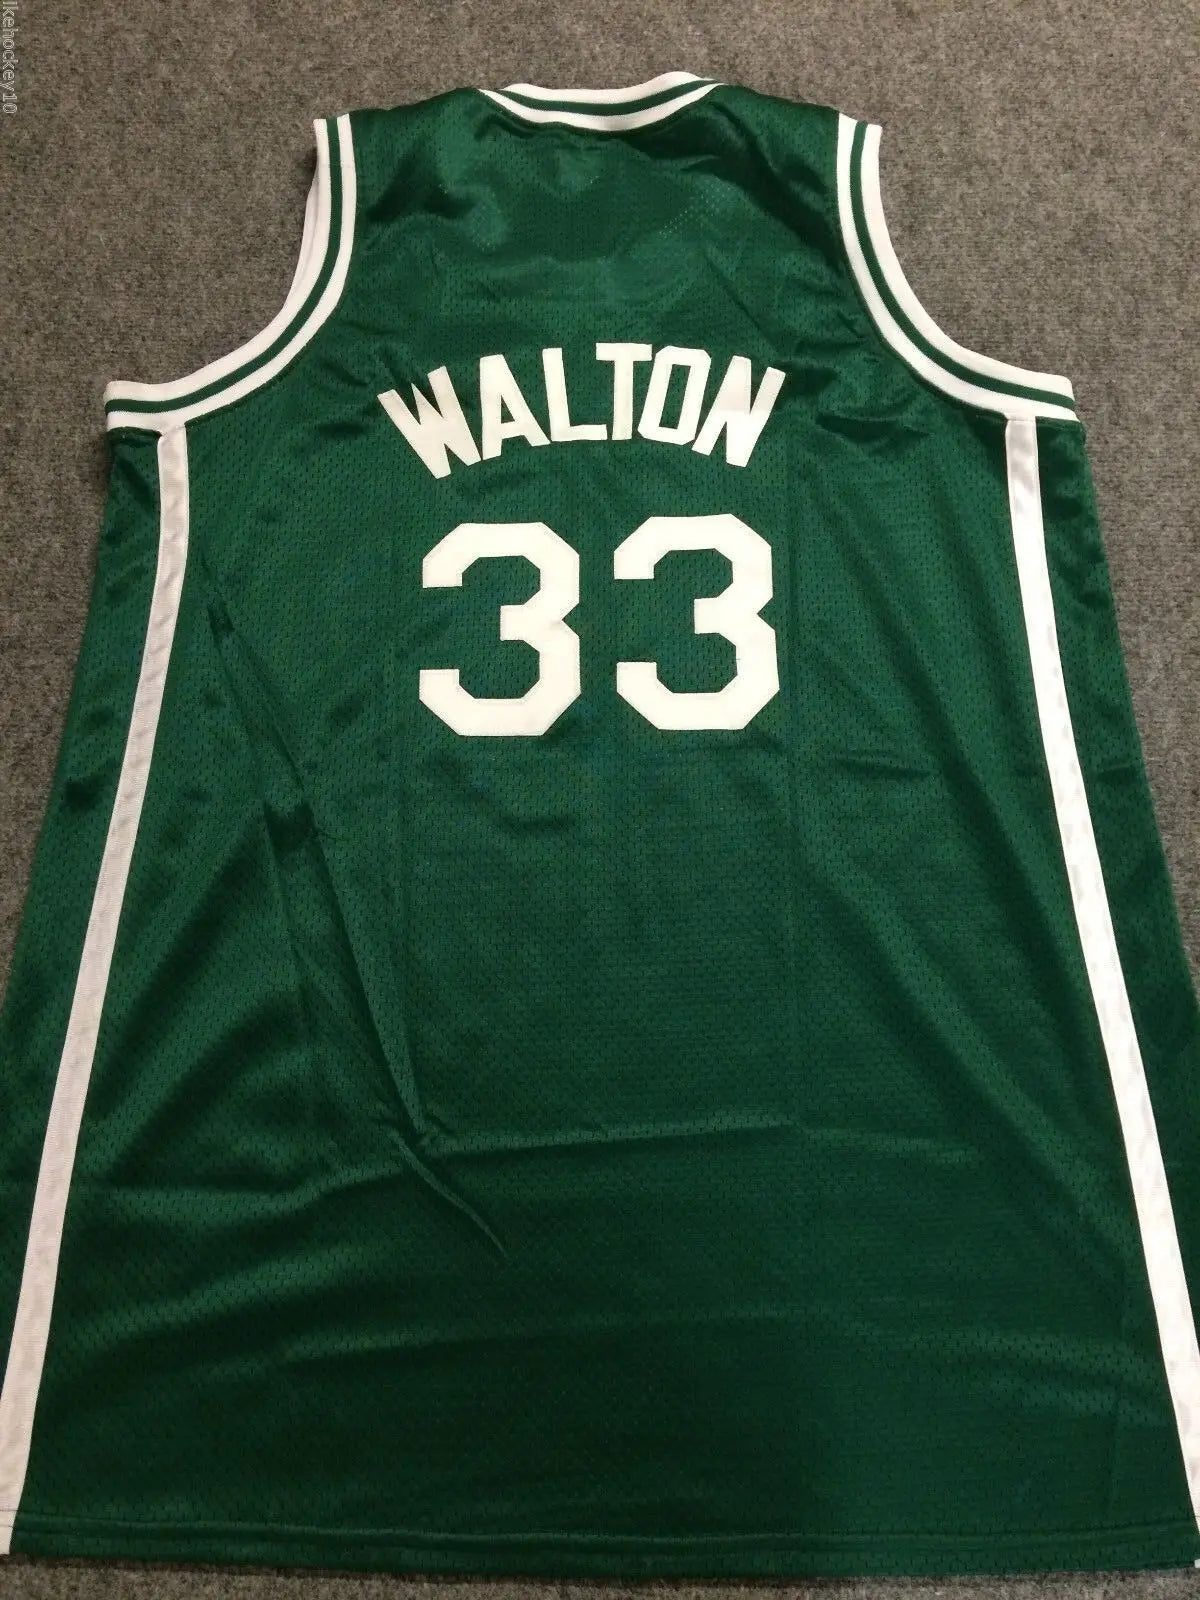 walton basketball jersey